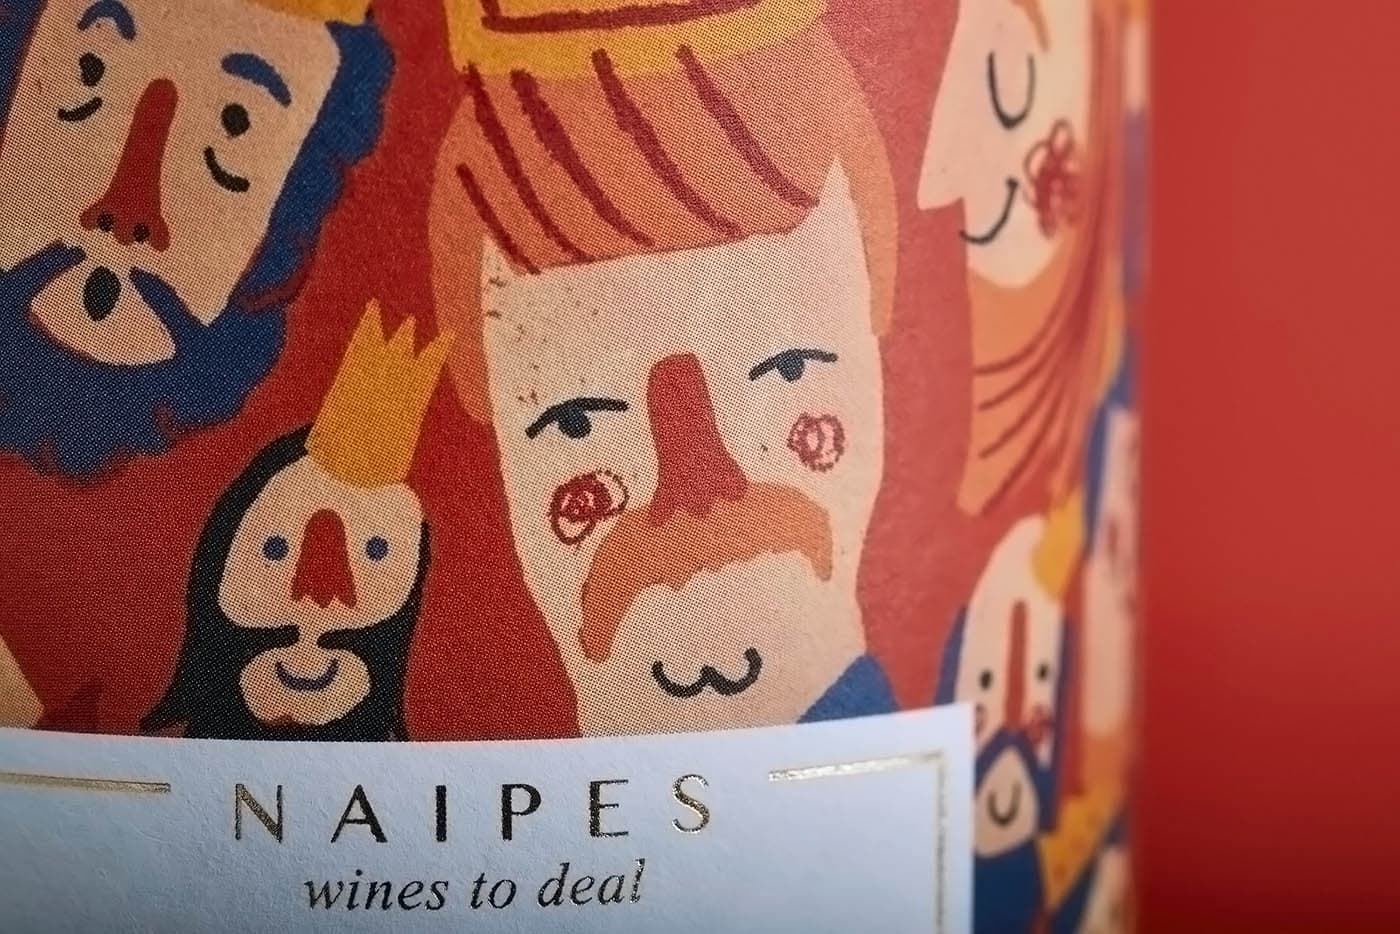 Diseño de packaging (etiquetas) para familia de vinos españoles con ilustraciones basadas en juegos de cartas clásicos